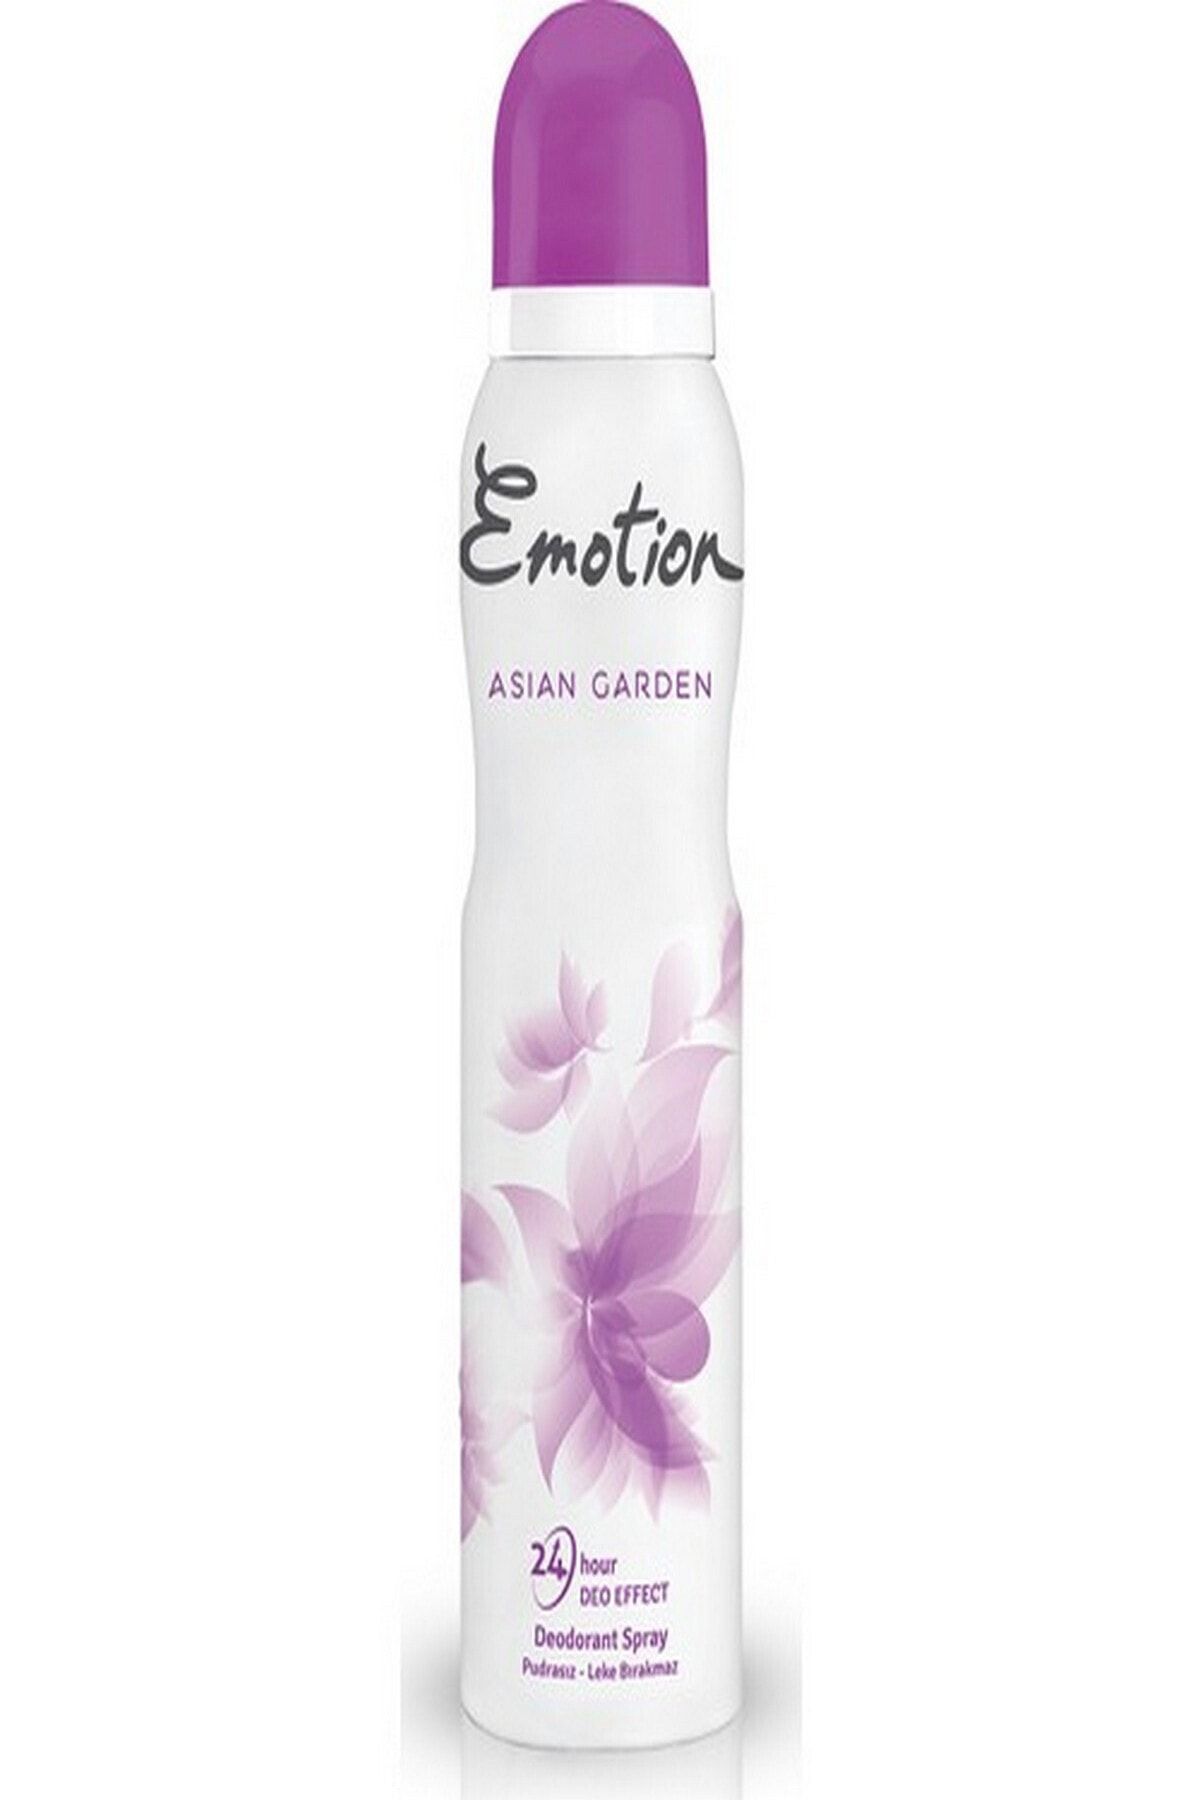 Emotion Asian Garden Kadın Deodorant 150 ml